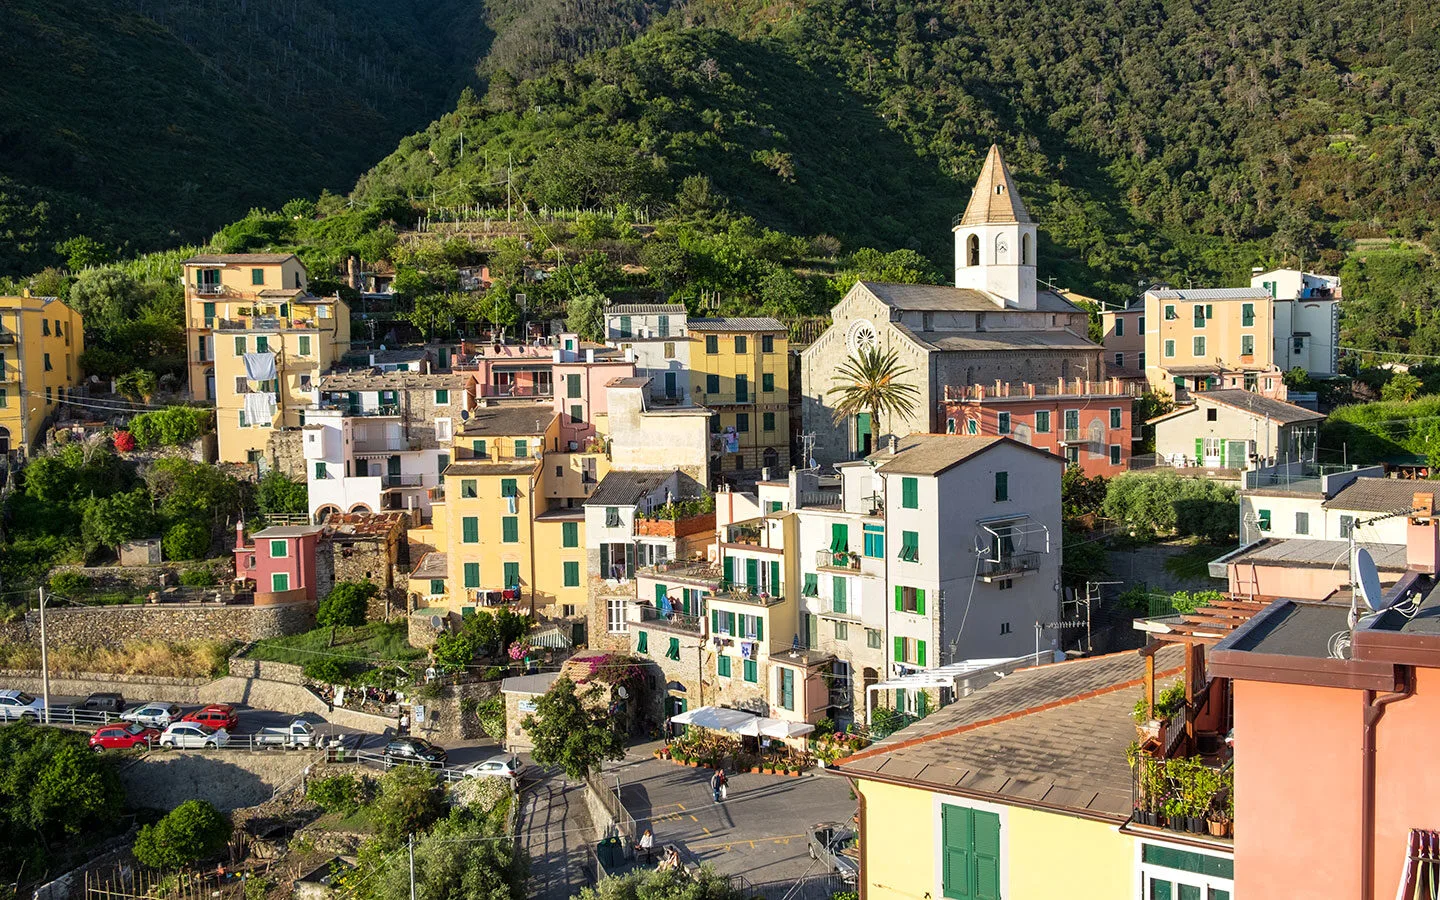 The Cinque Terre village of Corniglia